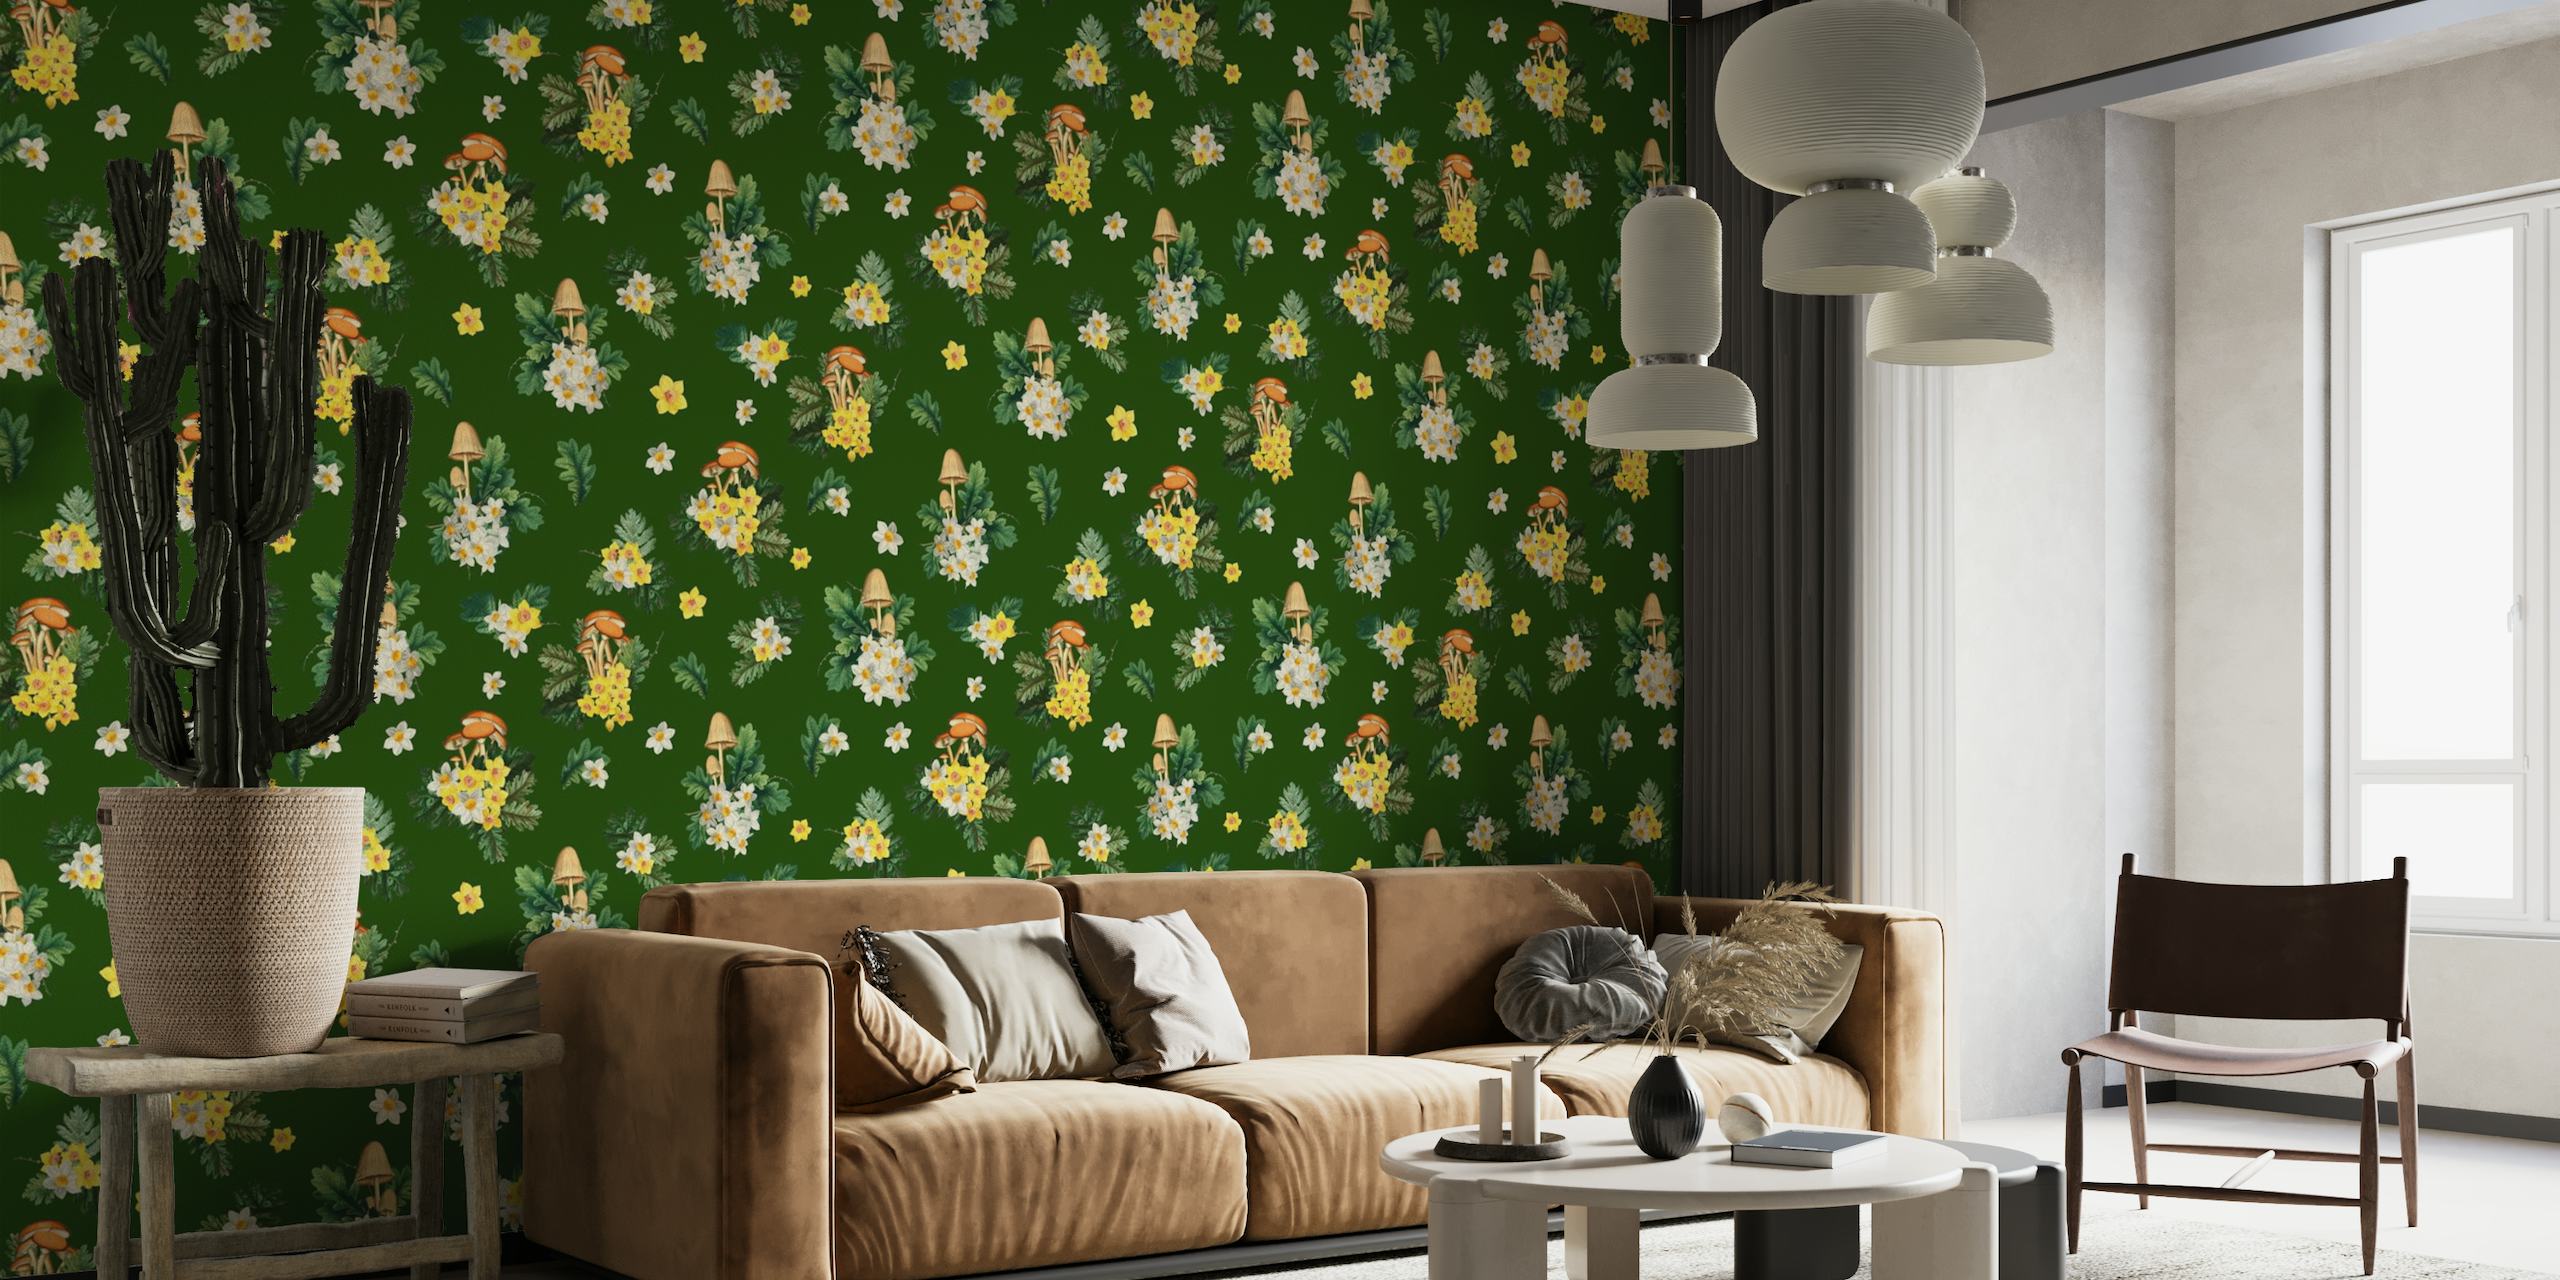 Illustrativt vægmaleri af svampe og vilde blomster på en grøn baggrund, perfekt til et rum med naturtema.